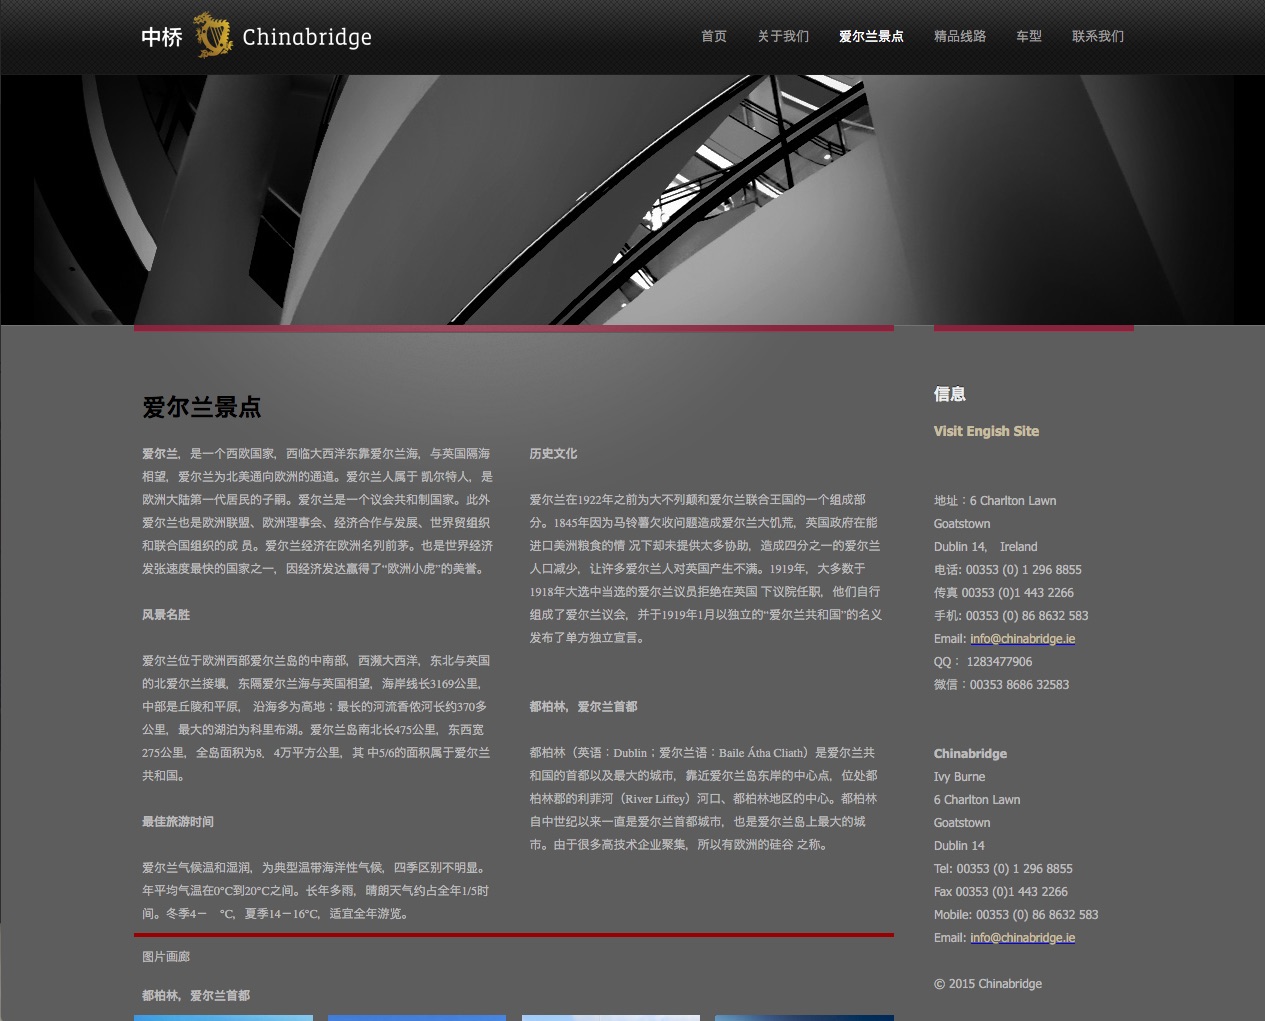 Chinabridge Chinese language site